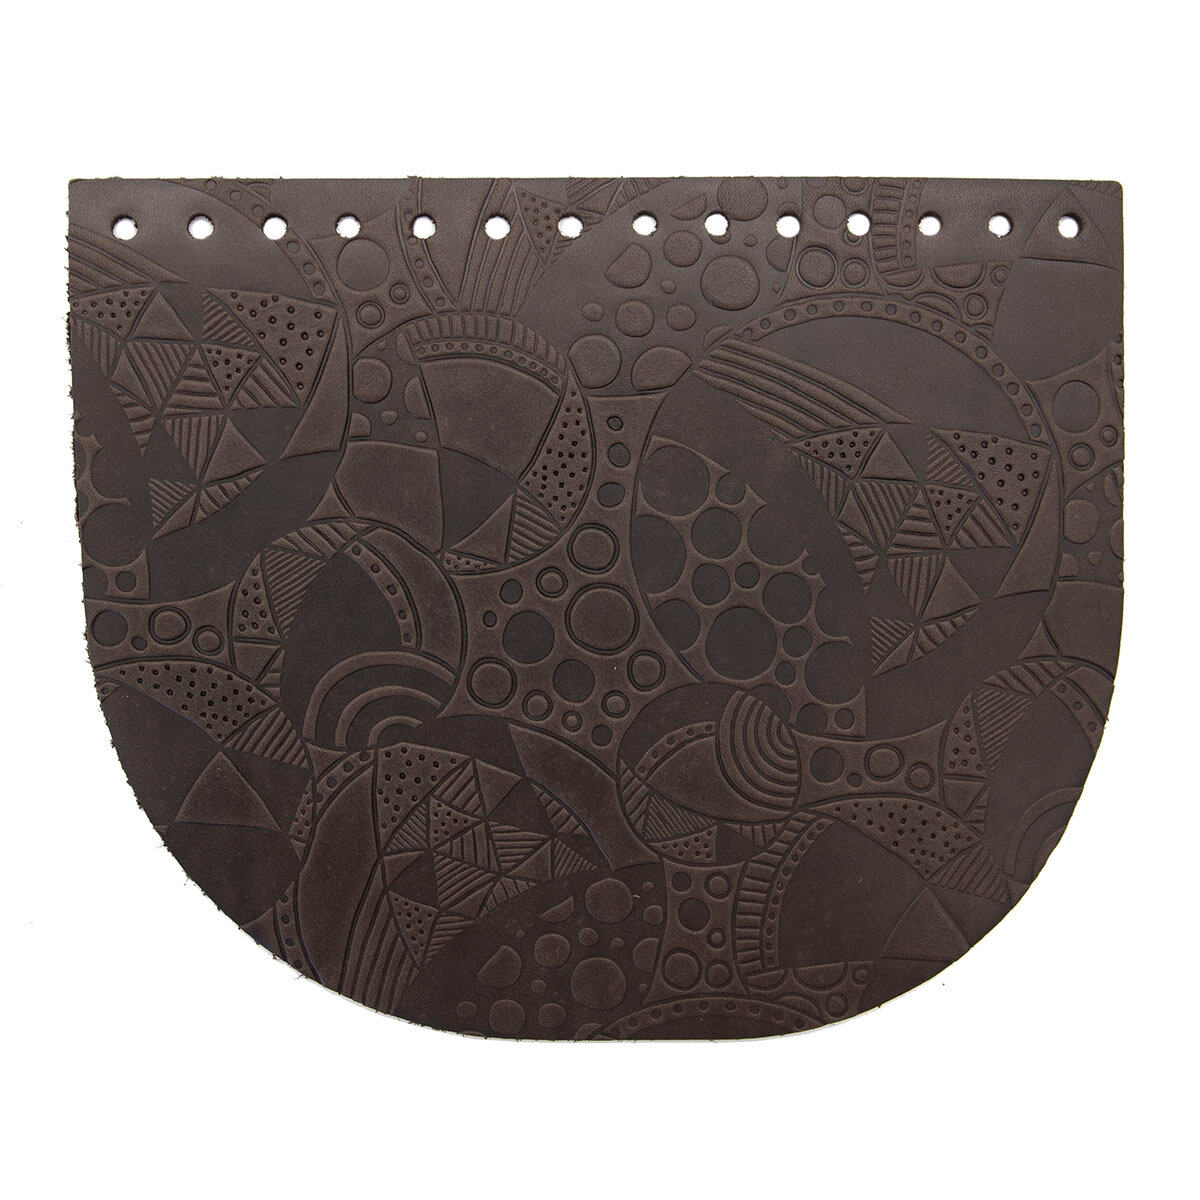 Крышечка для сумки Абстракция с кругом, 20,4см*17,2см, дизайн №2004, 100% кожа (темно-коричневый)